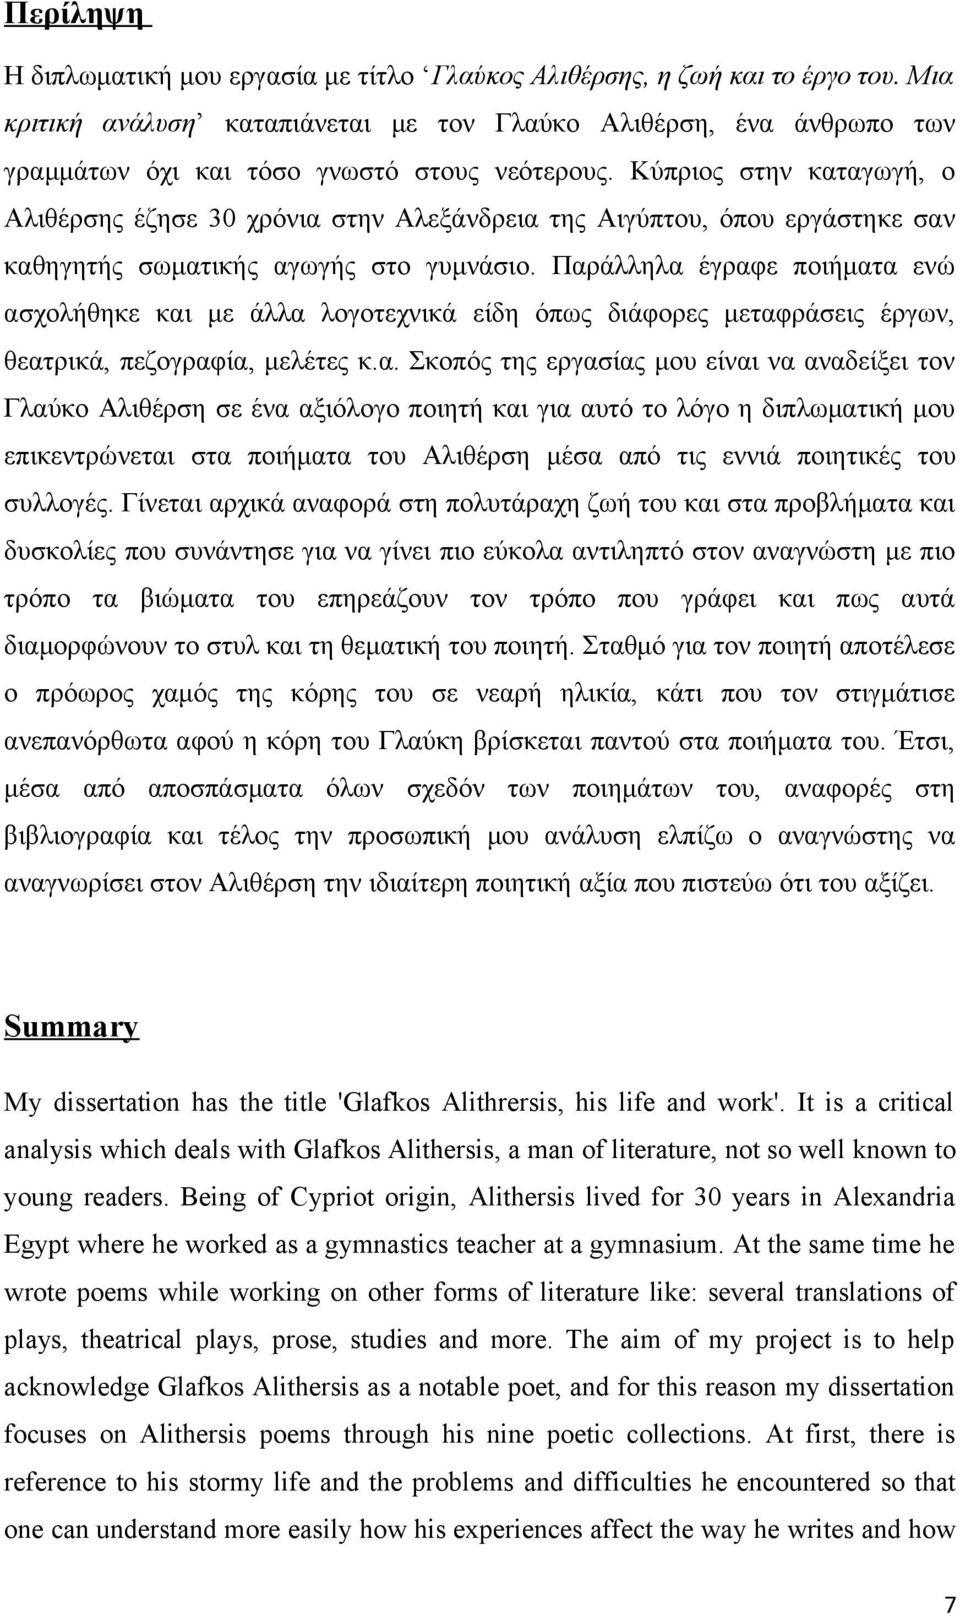 Κύπριος στην καταγωγή, ο Αλιθέρσης έζησε 30 χρόνια στην Αλεξάνδρεια της Αιγύπτου, όπου εργάστηκε σαν καθηγητής σωματικής αγωγής στο γυμνάσιο.